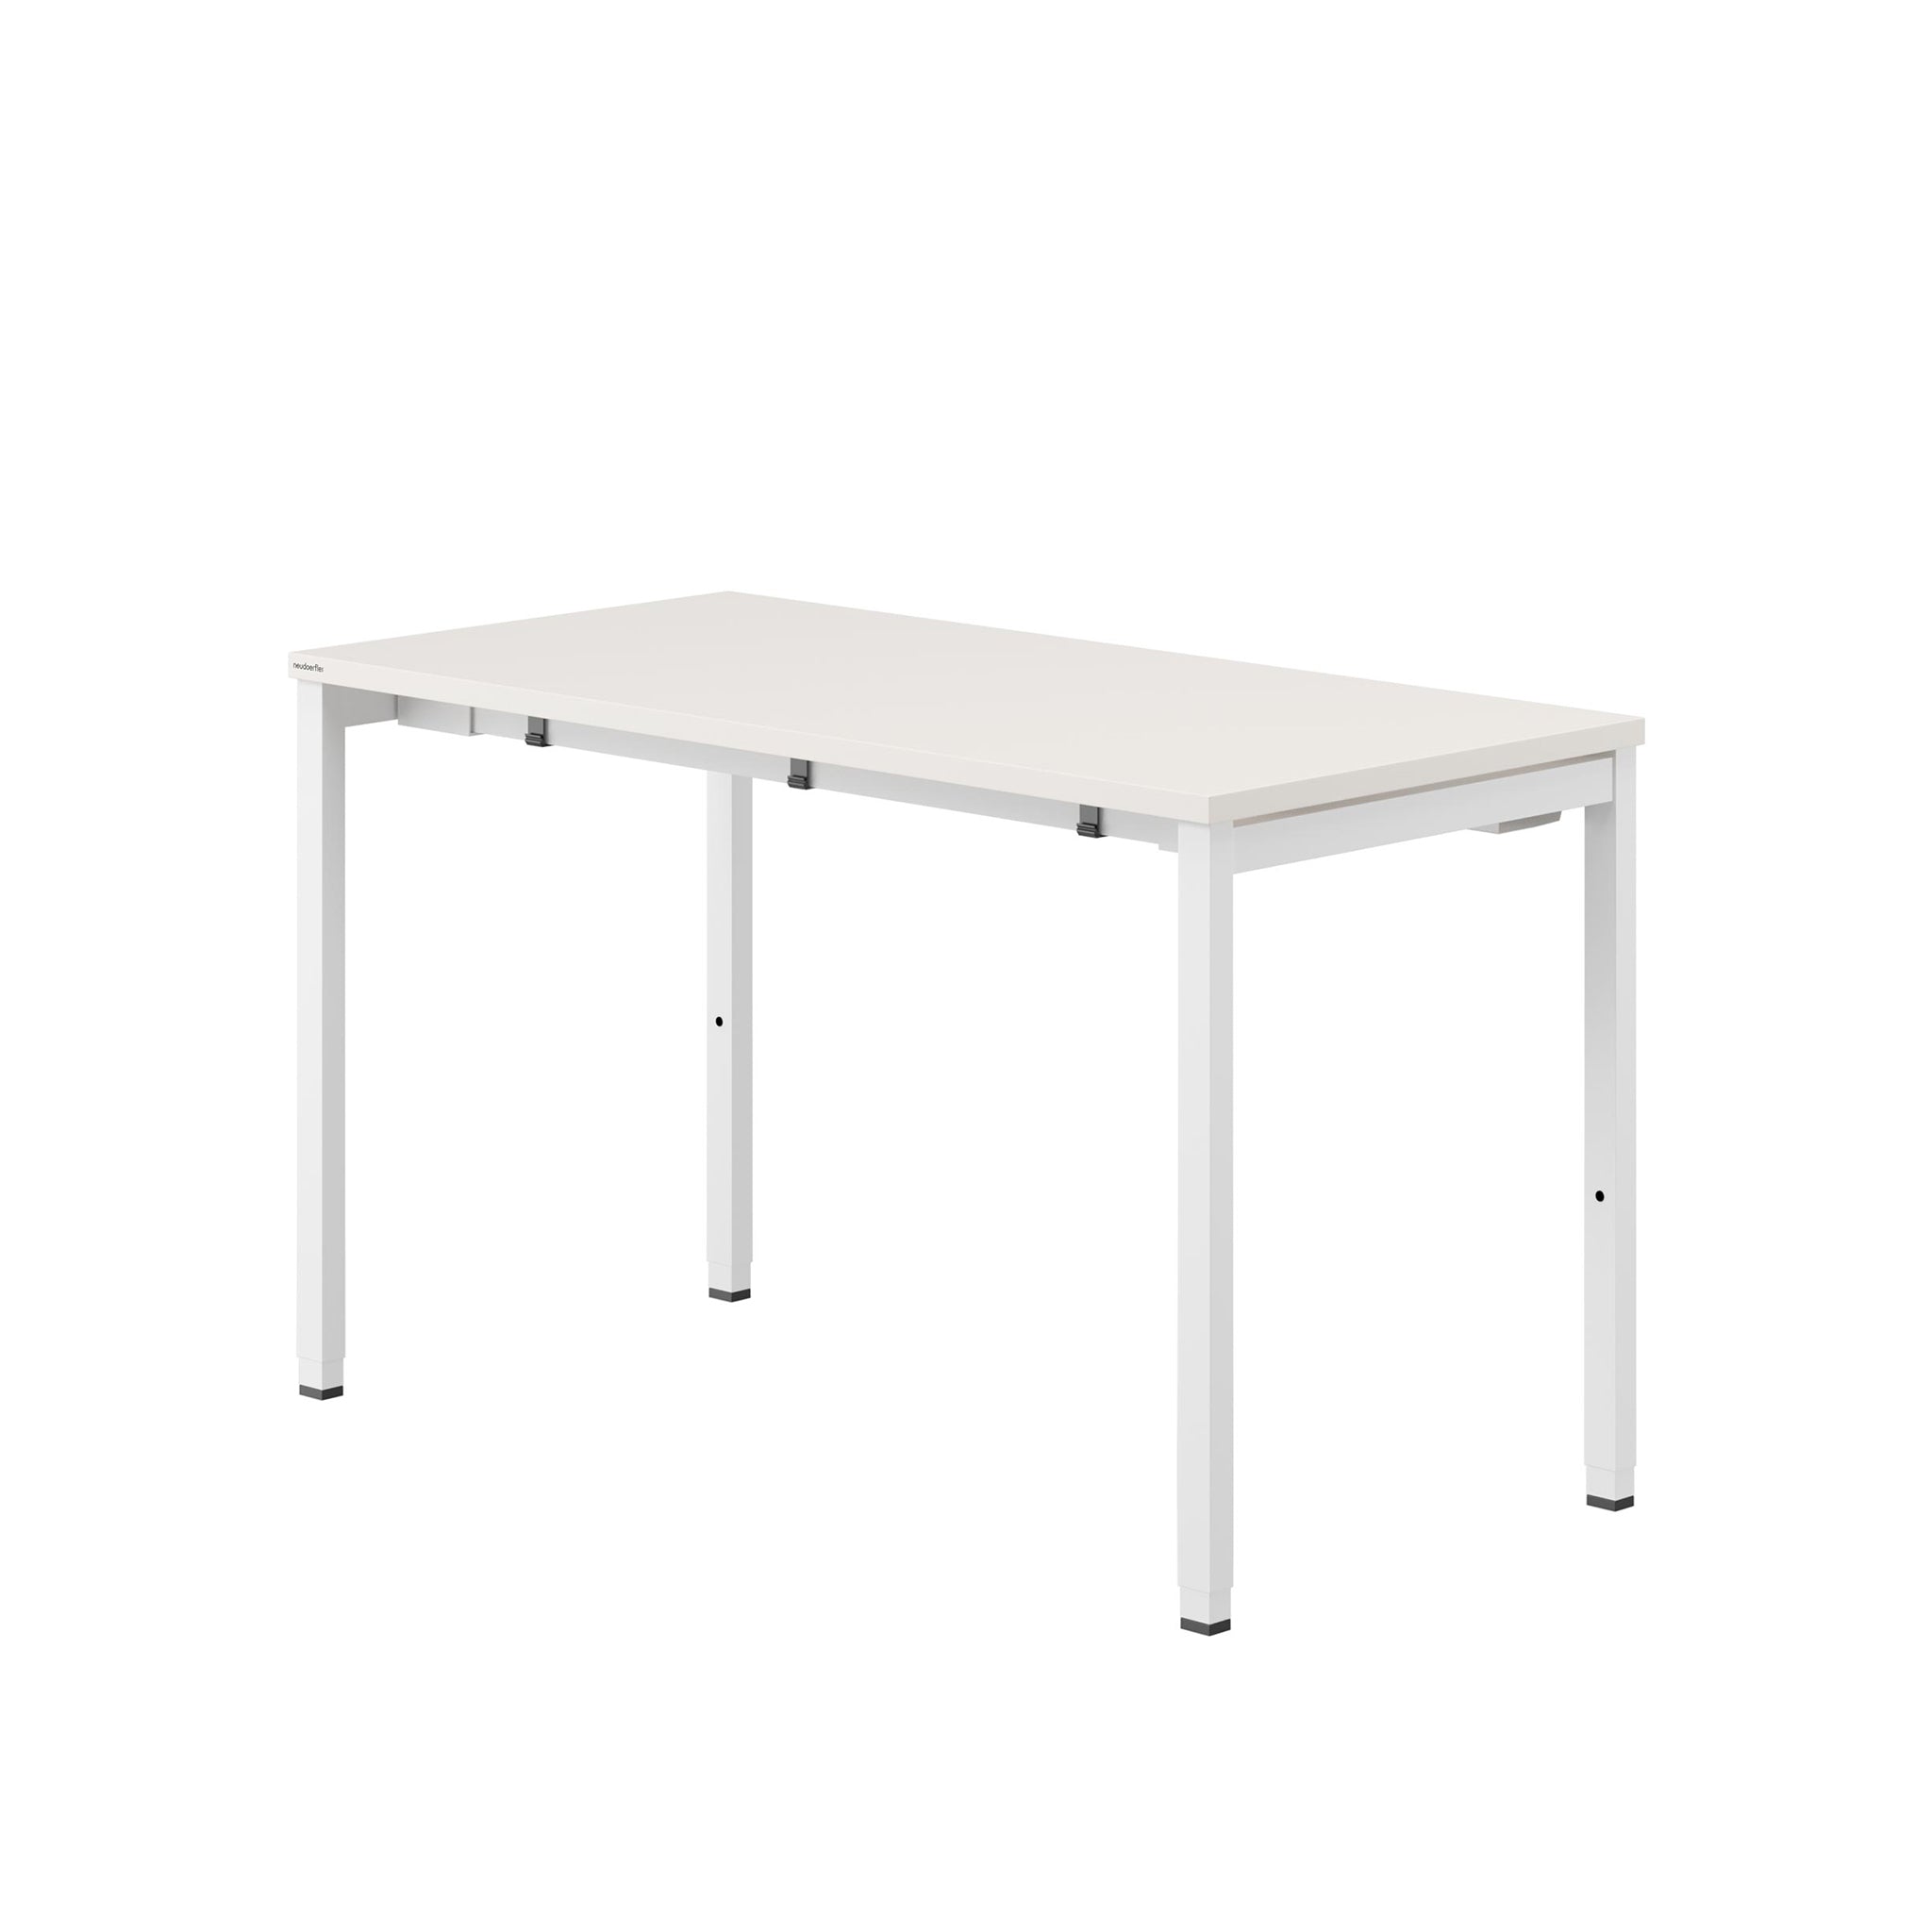 Von seitlich rechts man einen Tisch in der Farbe Cremeweiß. Der Arbeitstisch hat ein 4-Fußgestell mit quadratischen Tischbeinen, die ebenfalls in weiß gehalten sind. Der Tisch ist höheneinstellbar und hat einen integrierten Kabelkanal.